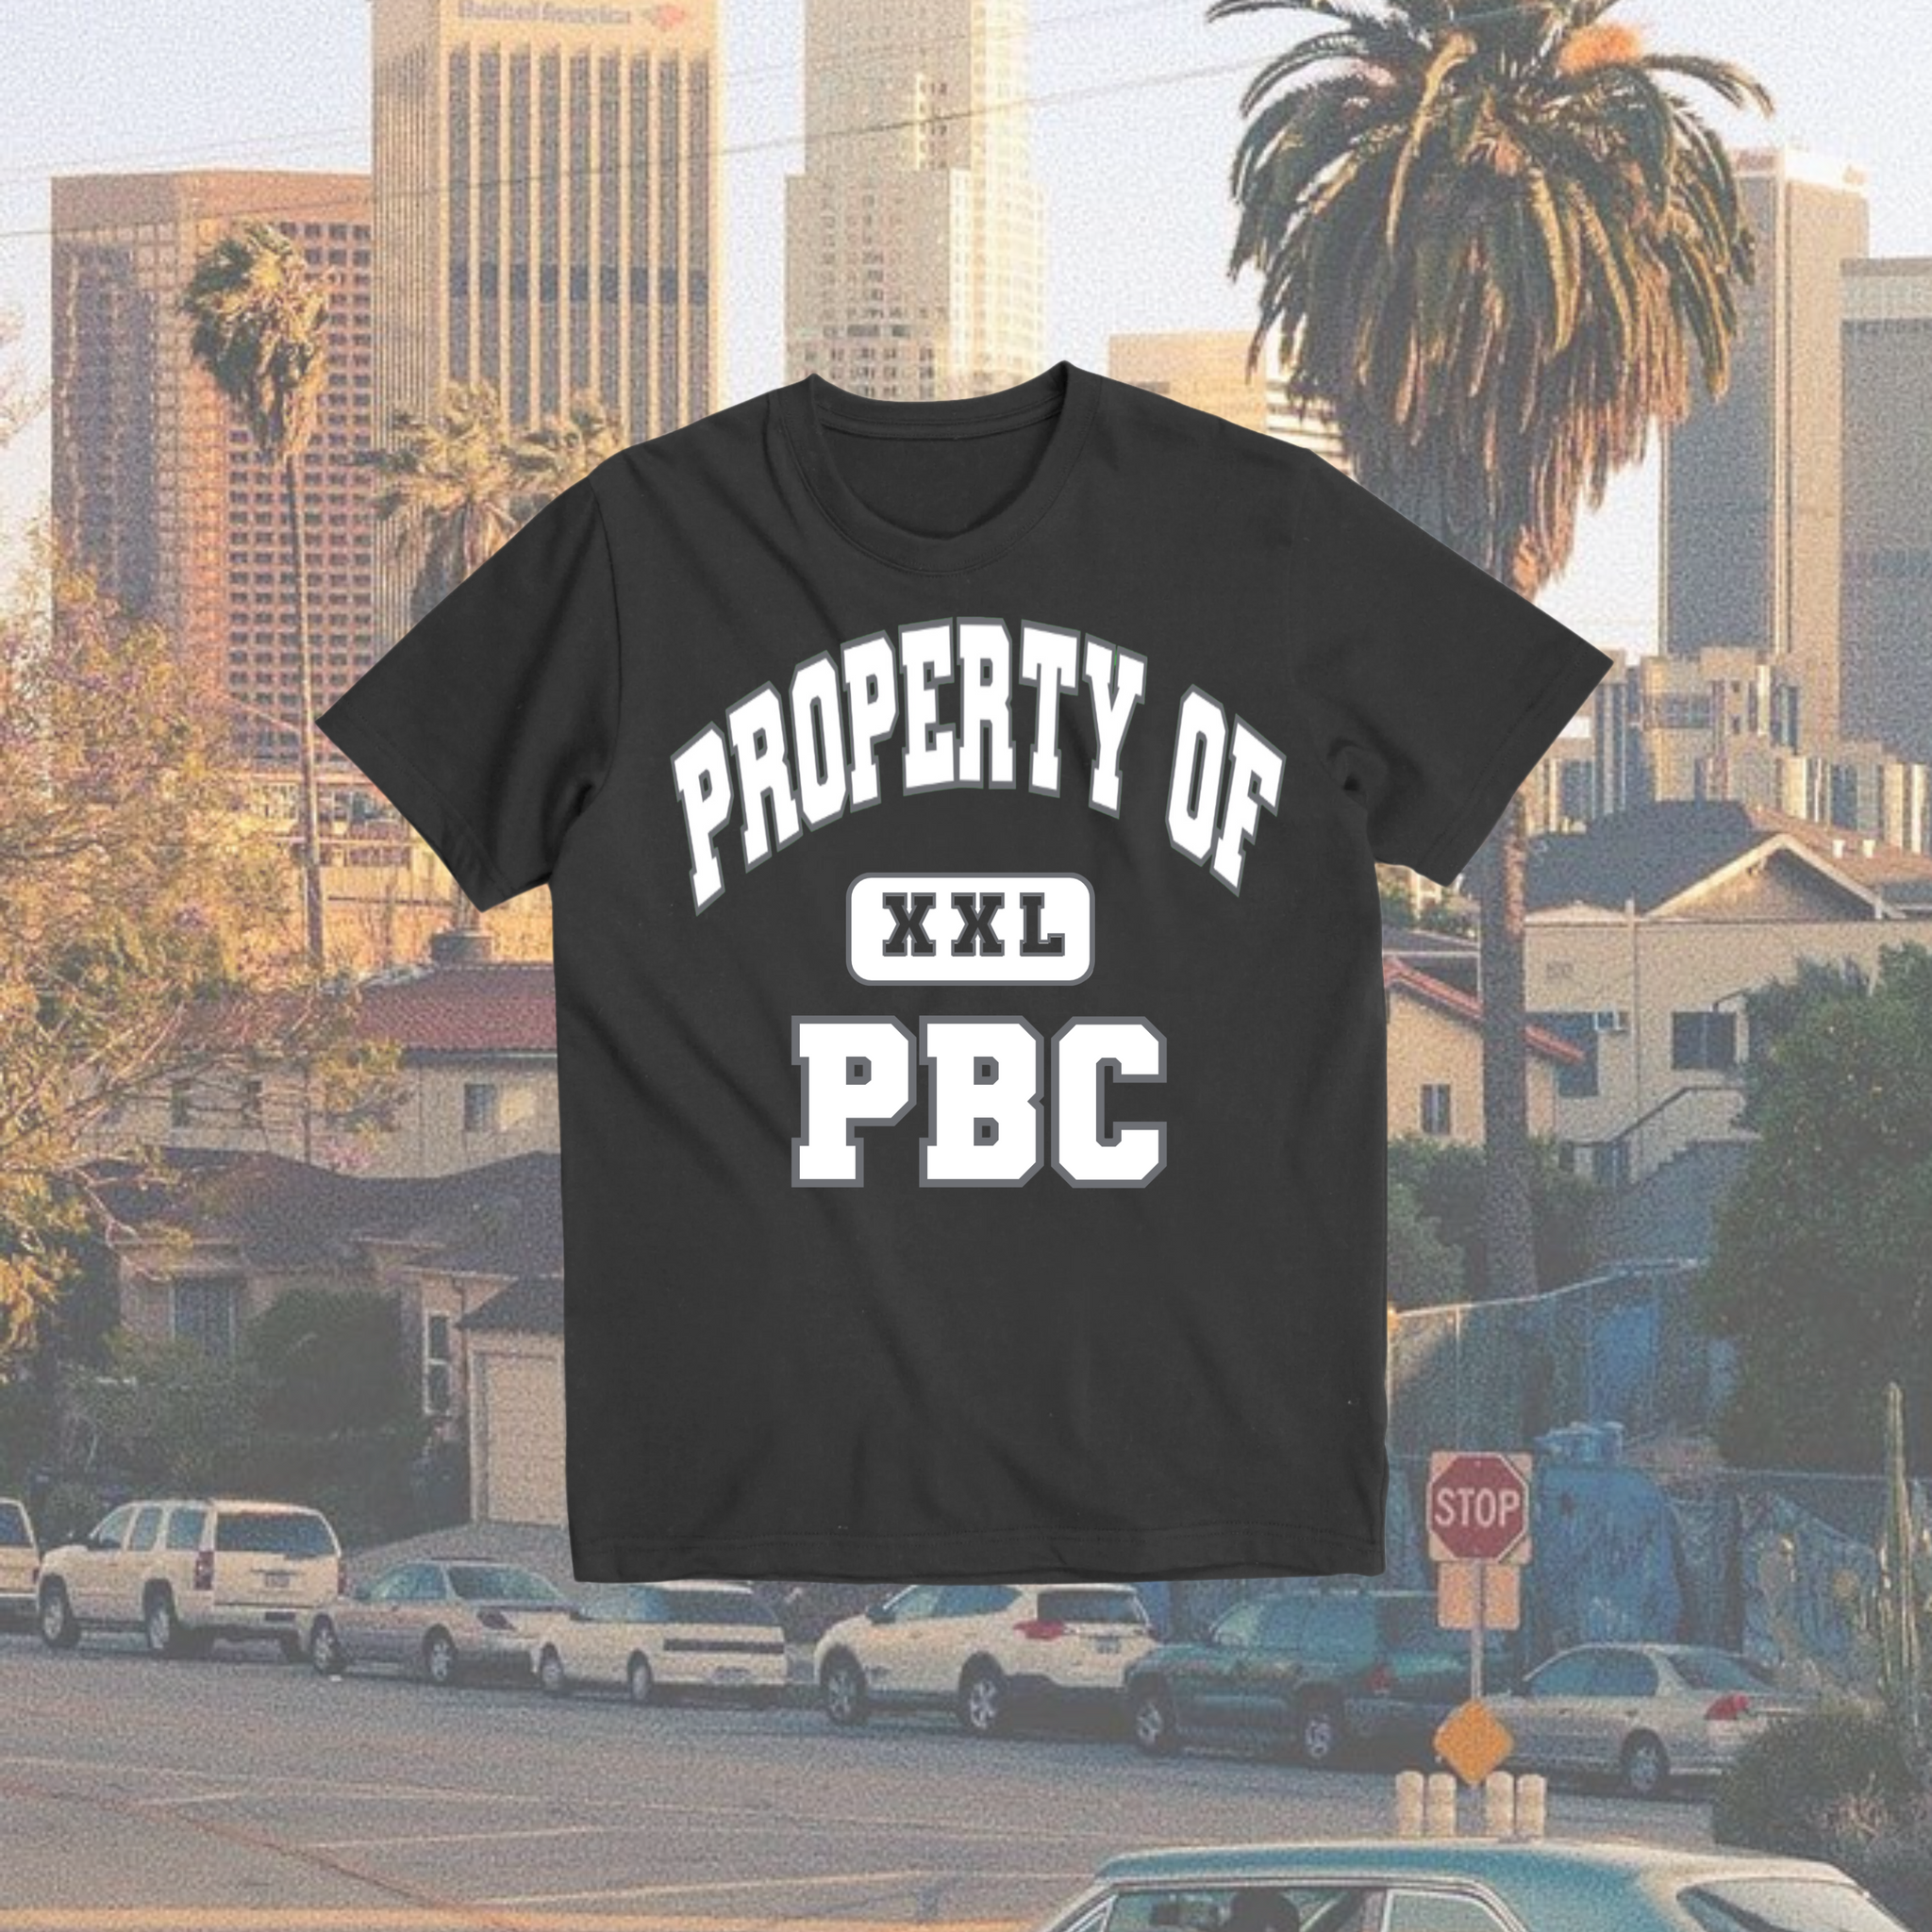 Property of PBC T-Shirt BIG LOGO (All colors)